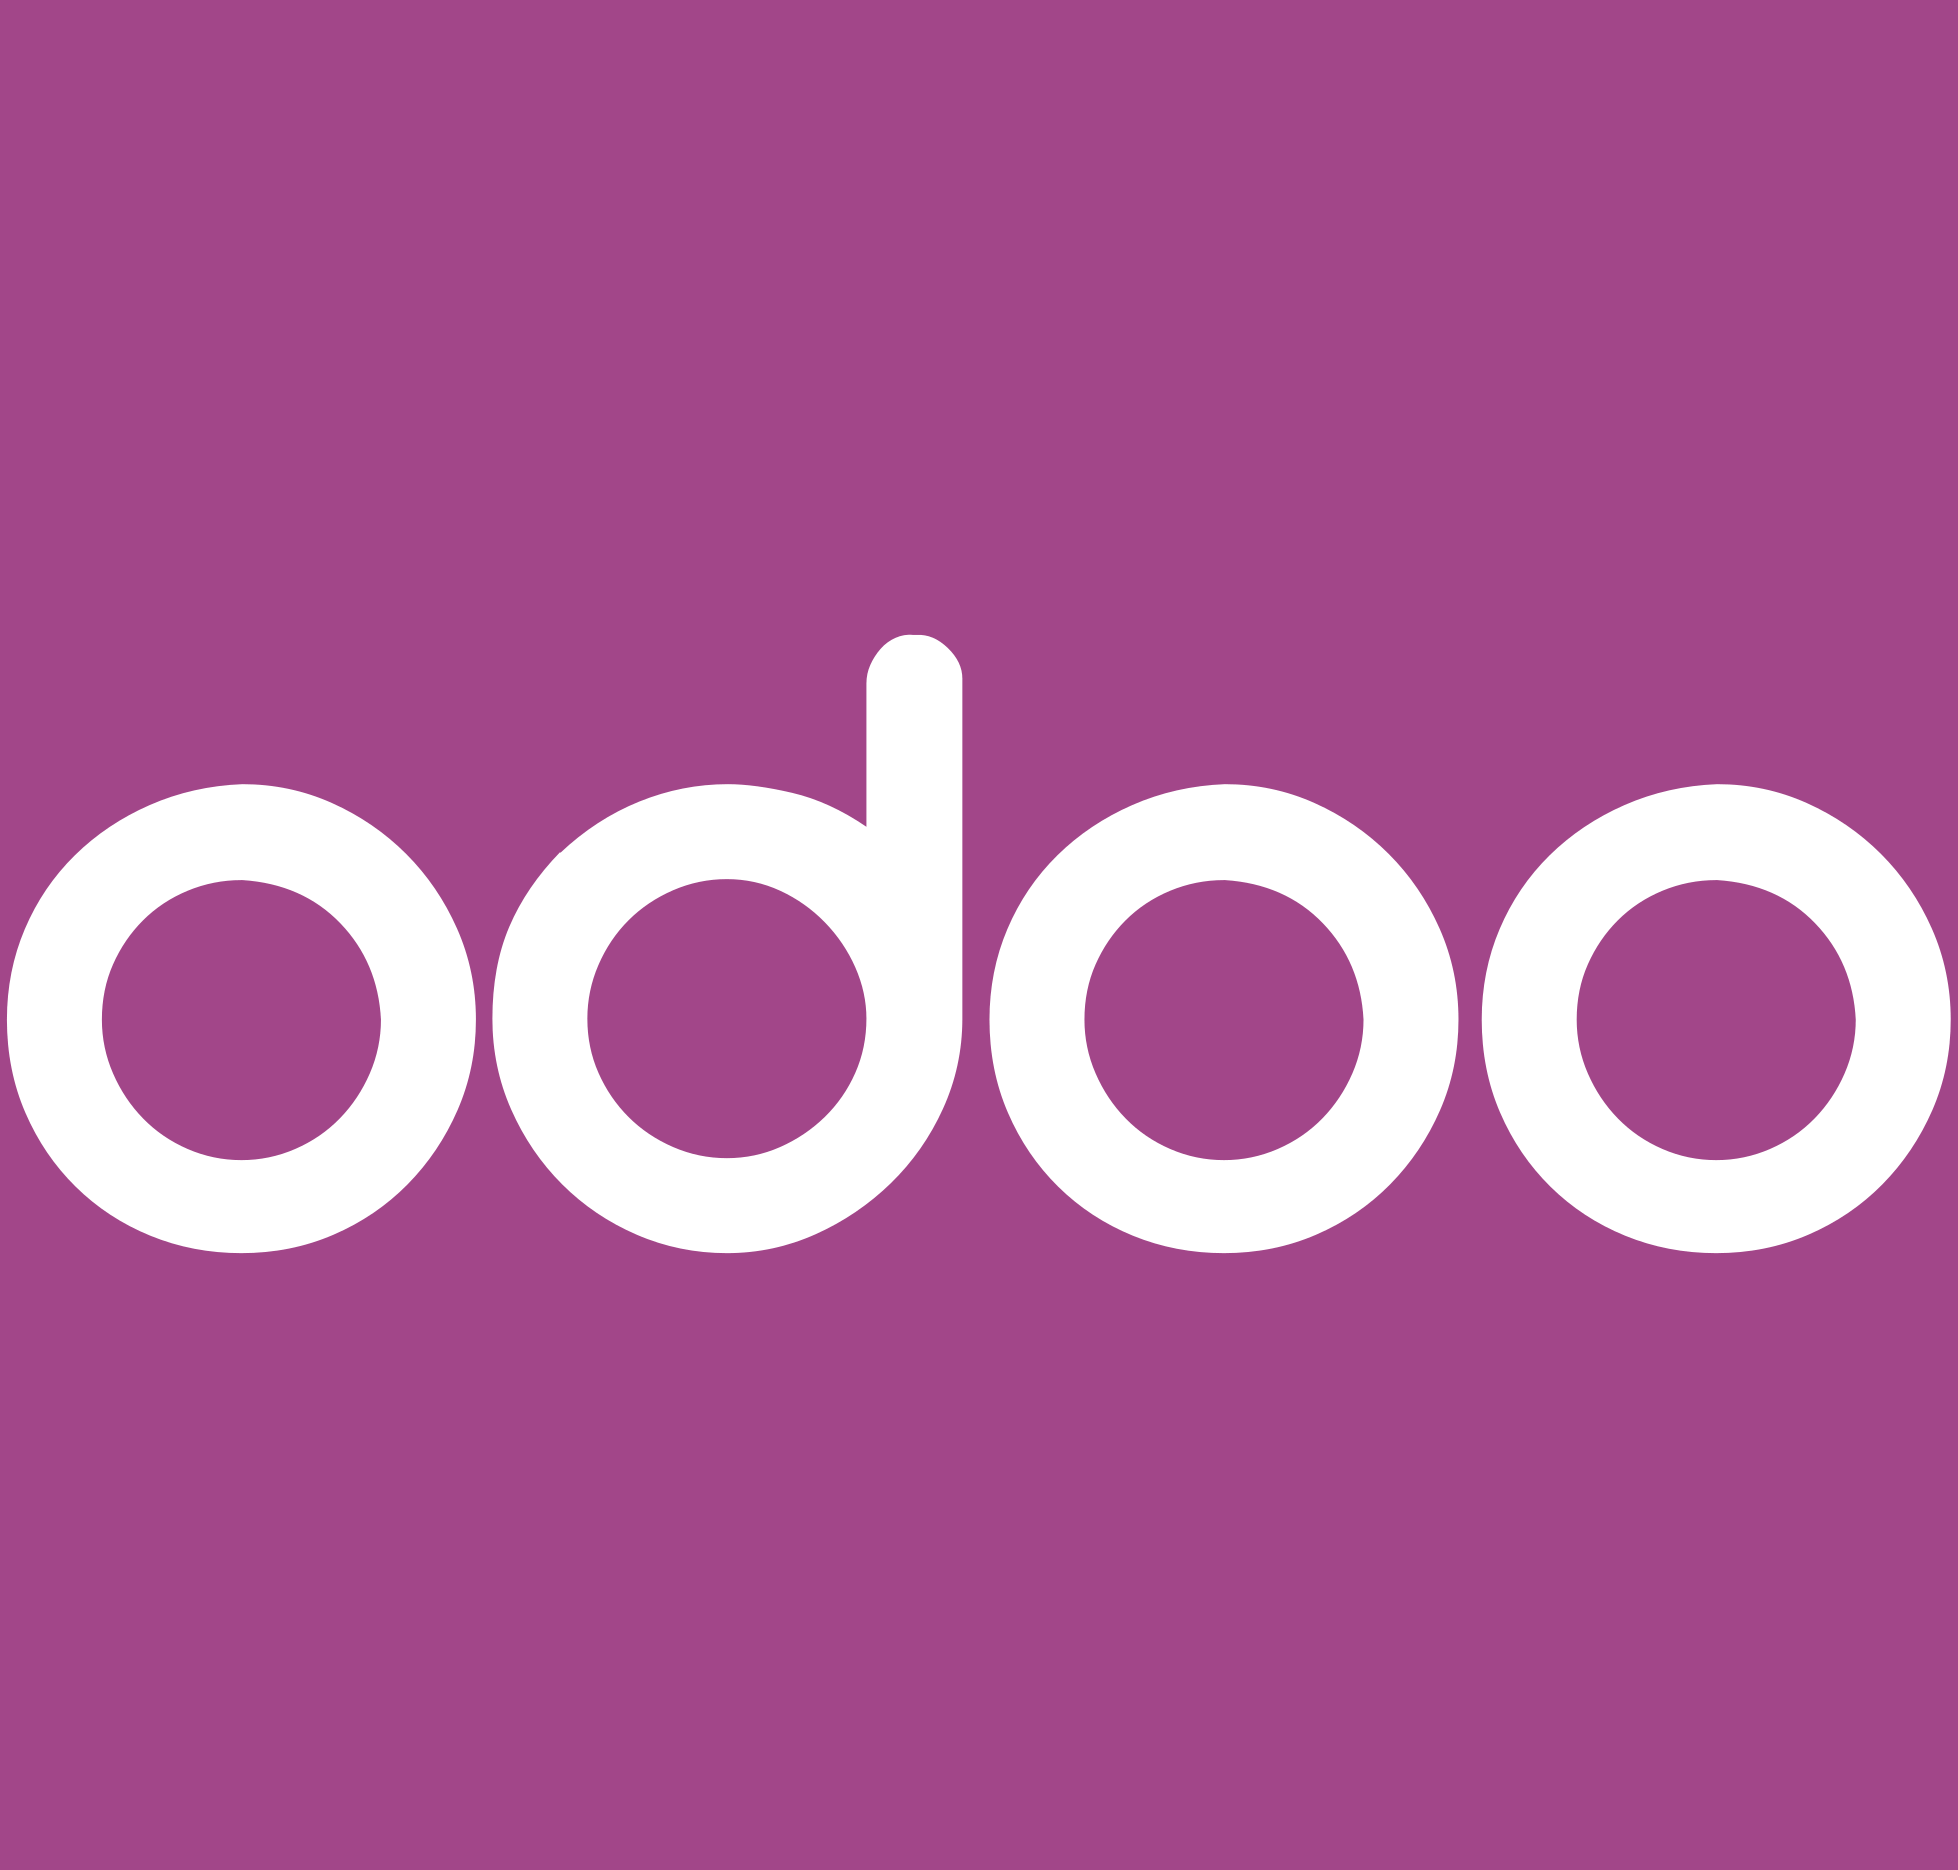 logo Odoo